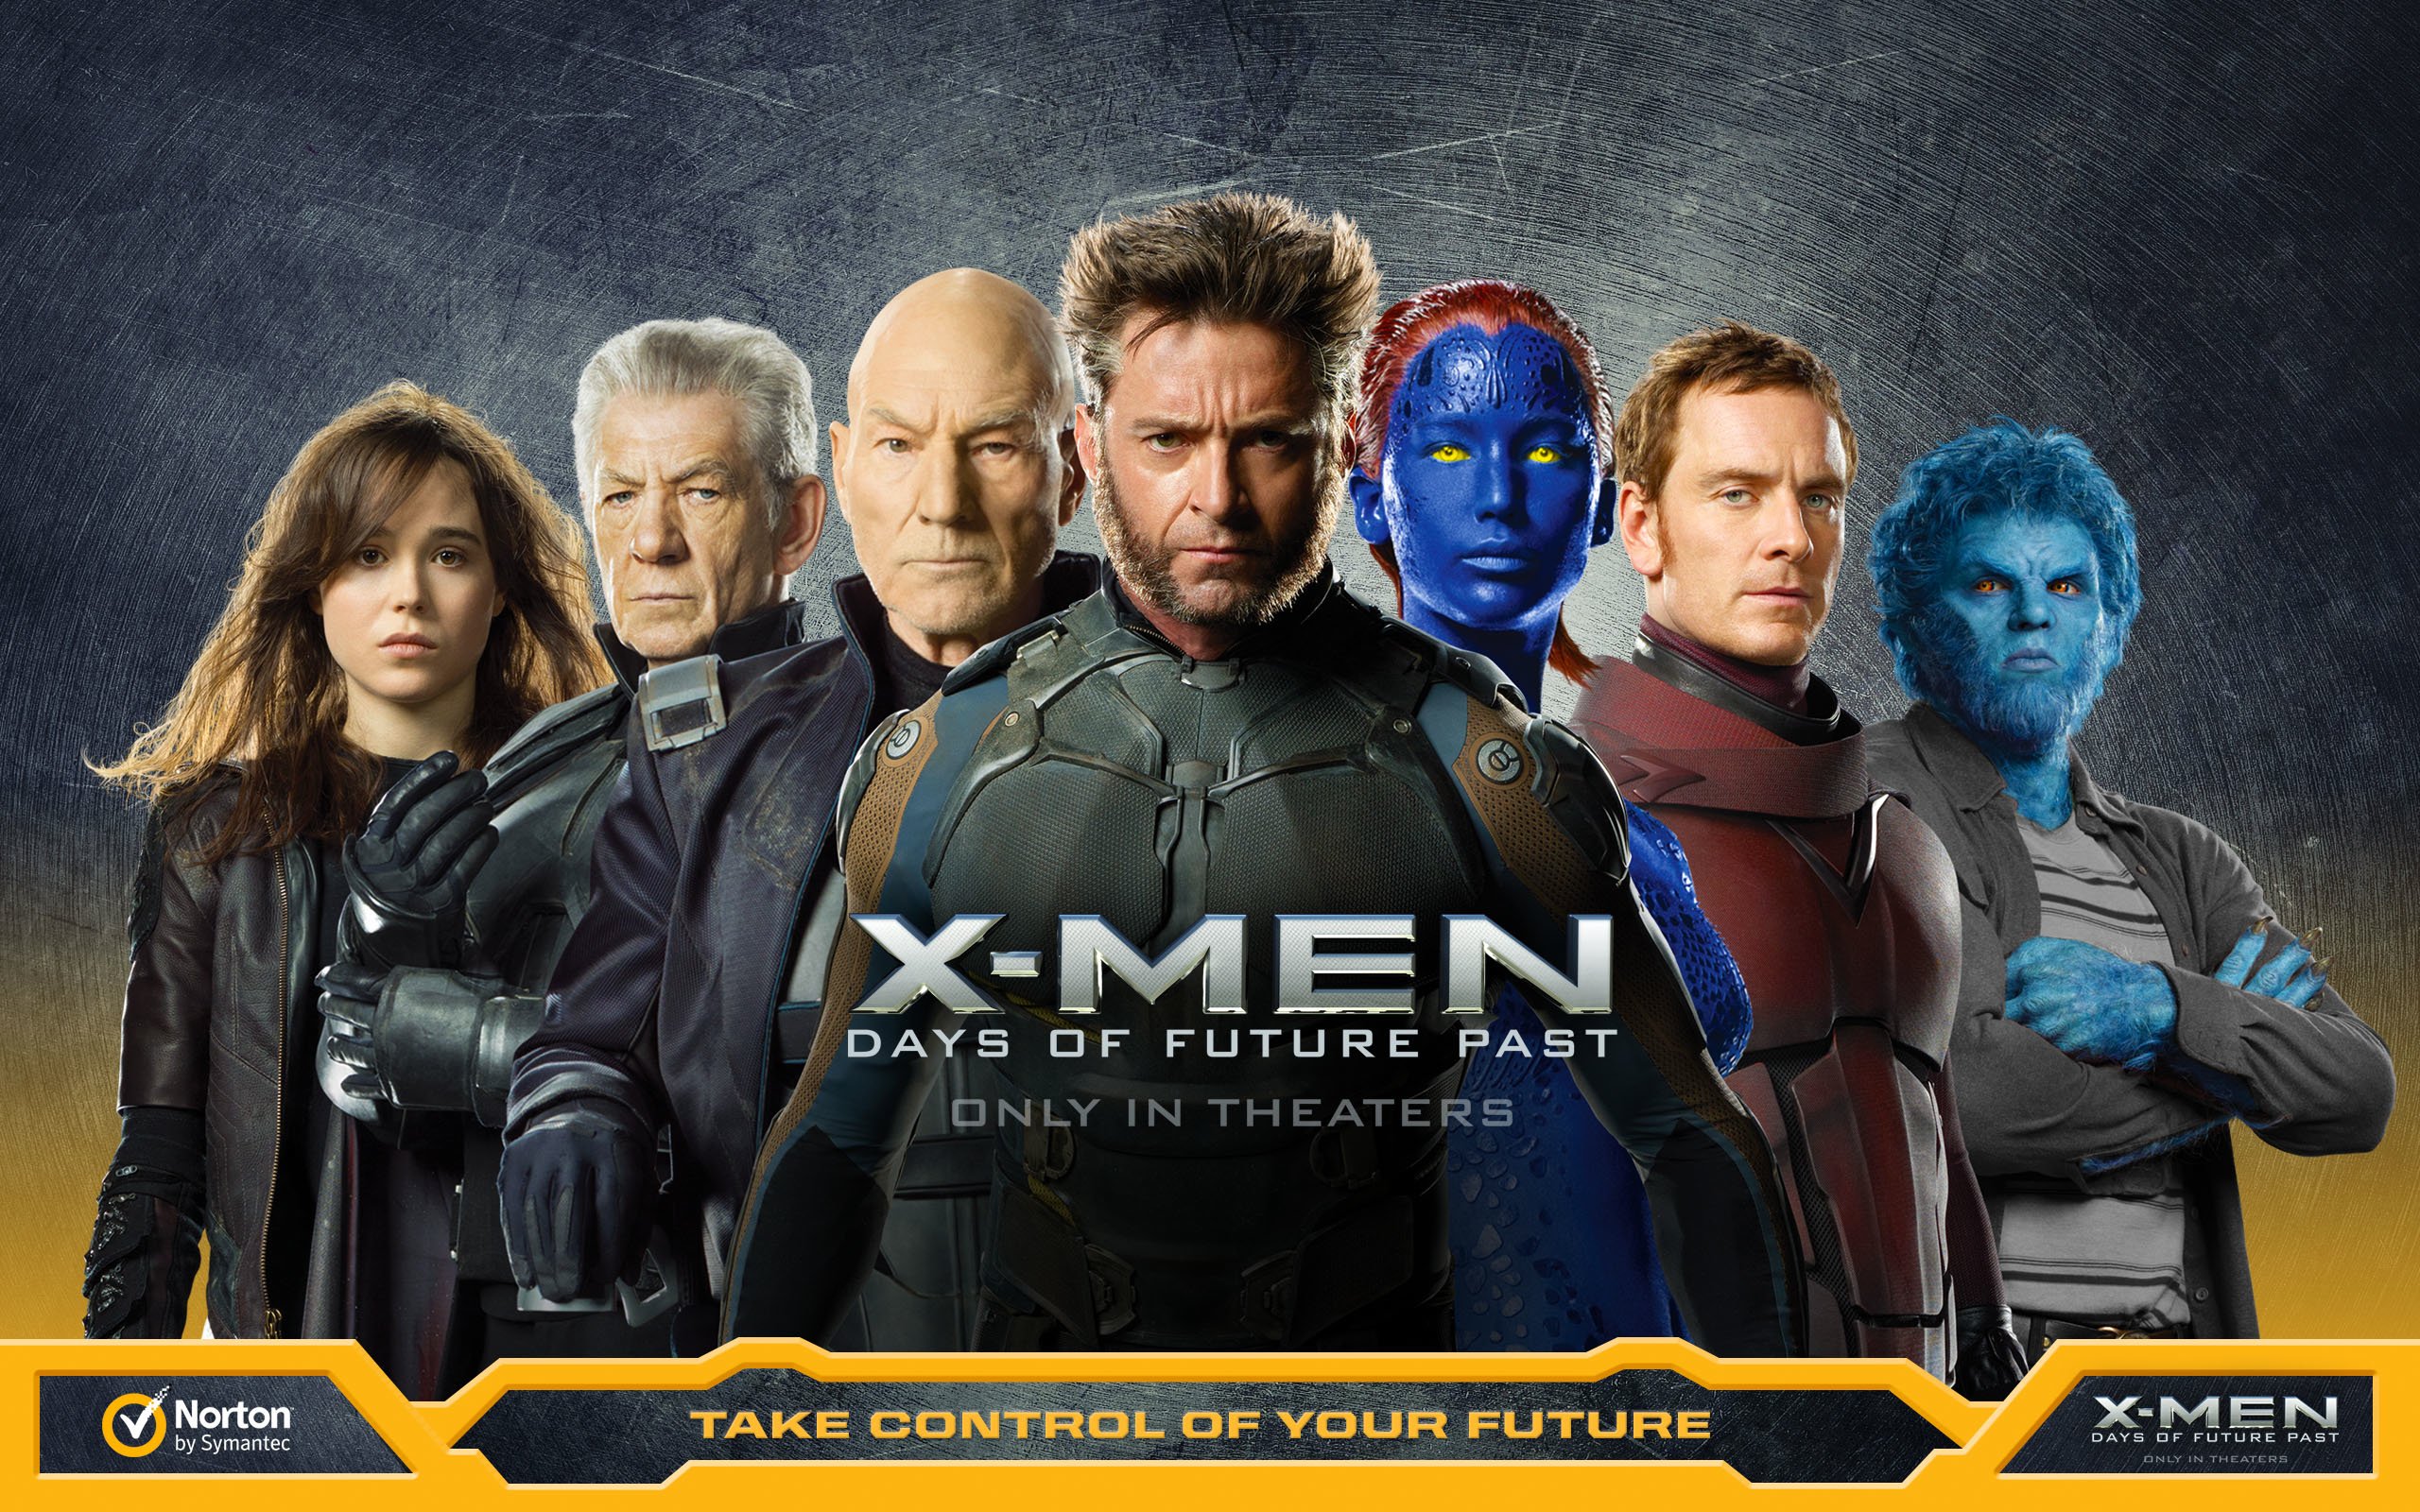 x-men-days-future-past-action-adventure-fantasy-movie-film